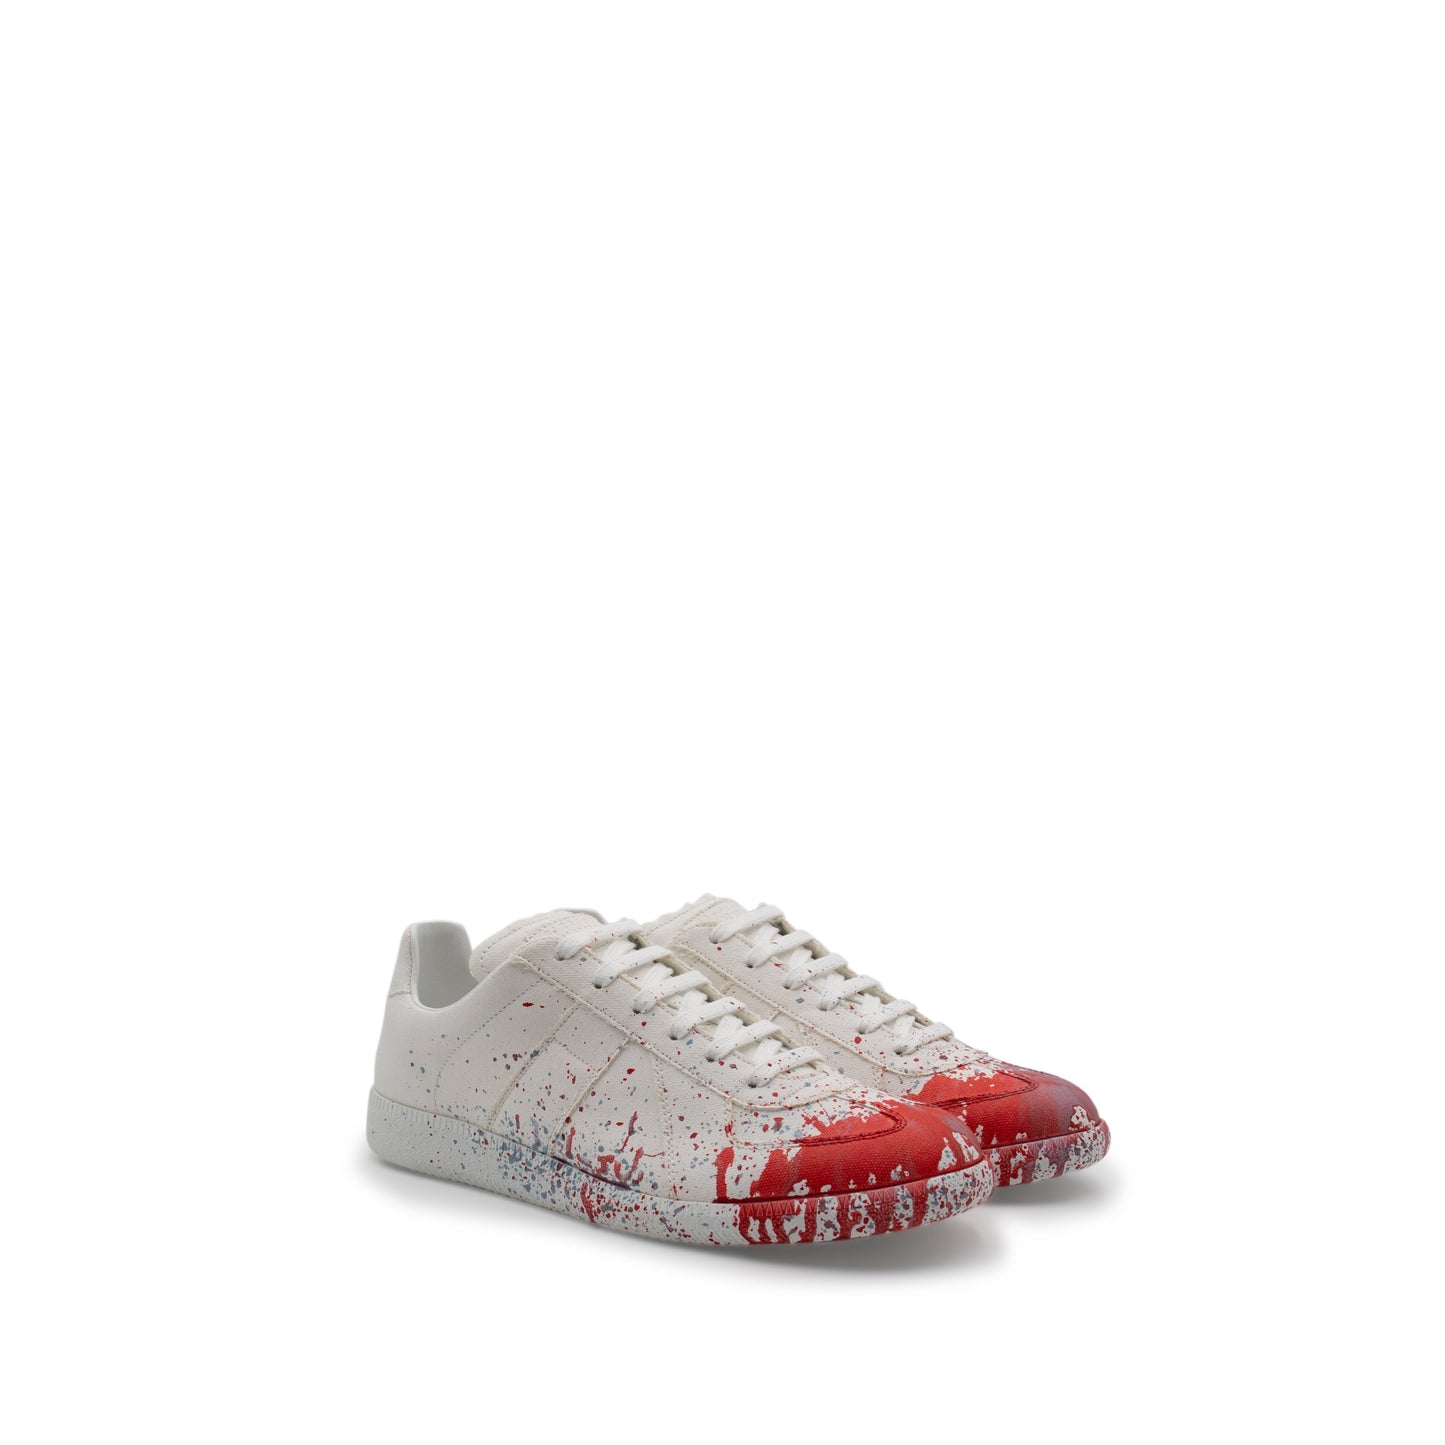 Replica Paint Splatter Sneaker in White